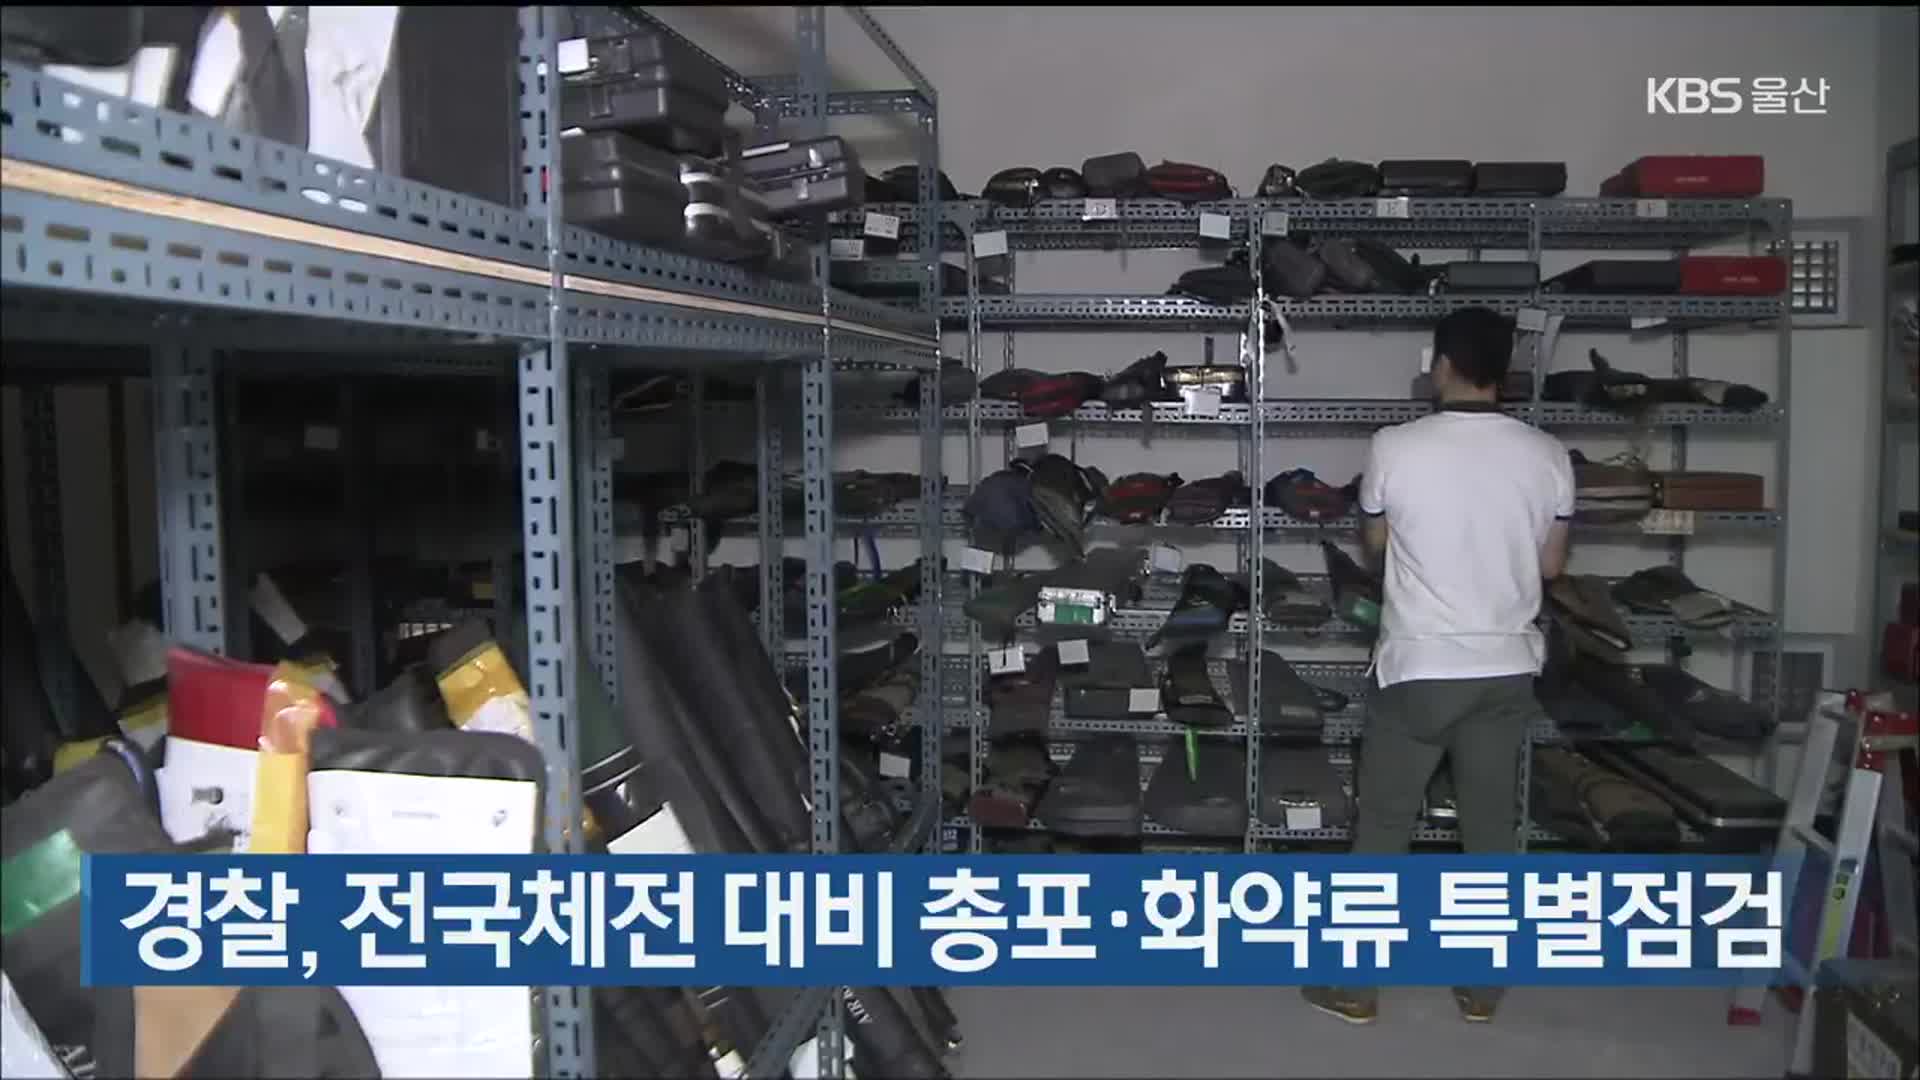 경찰, 전국체전 대비 총포·화약류 특별점검